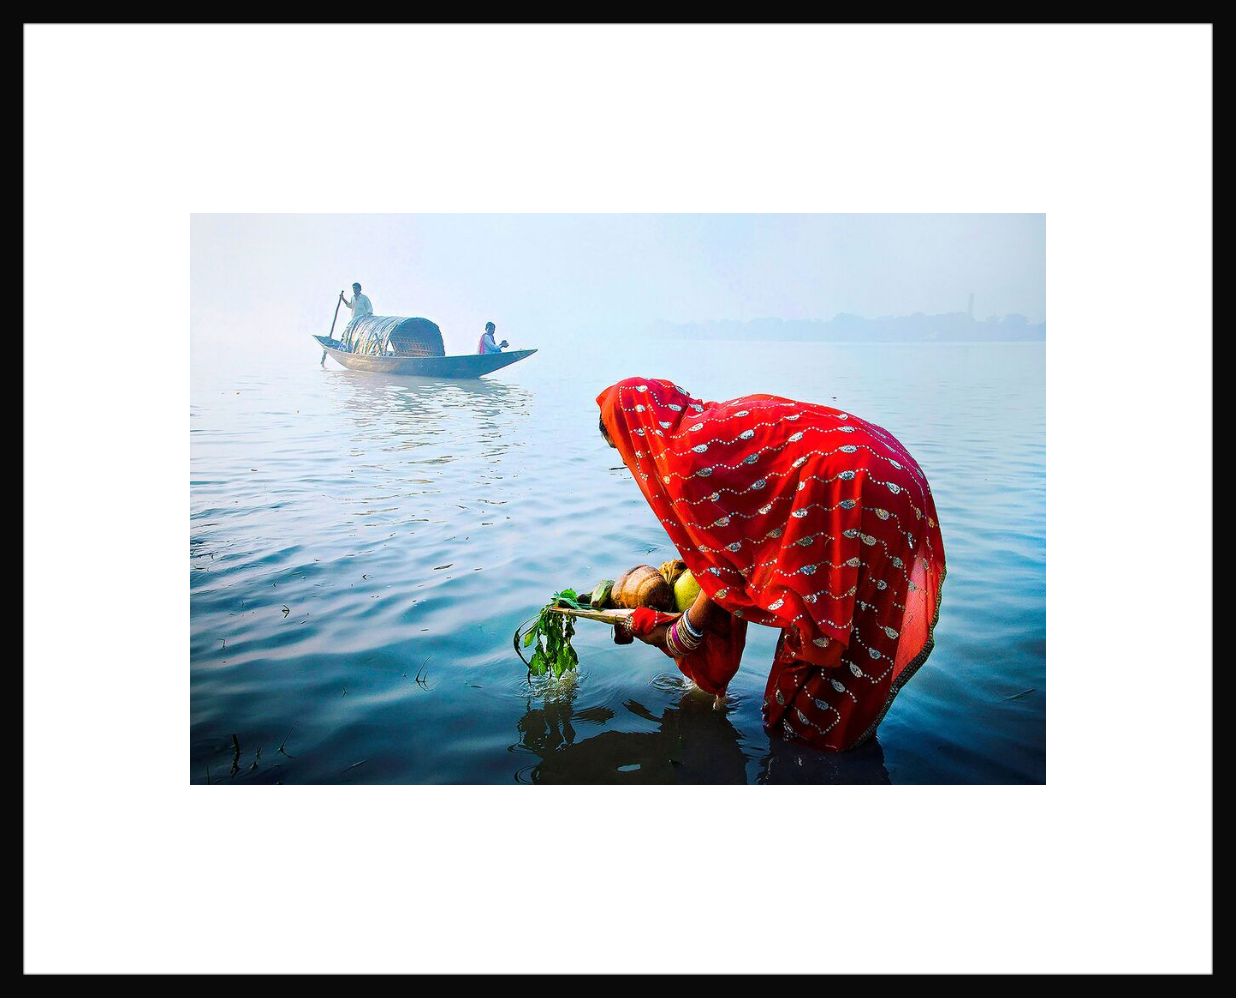 Fotografía Morning prayer - Pranab Basak - Cuadro de pintura